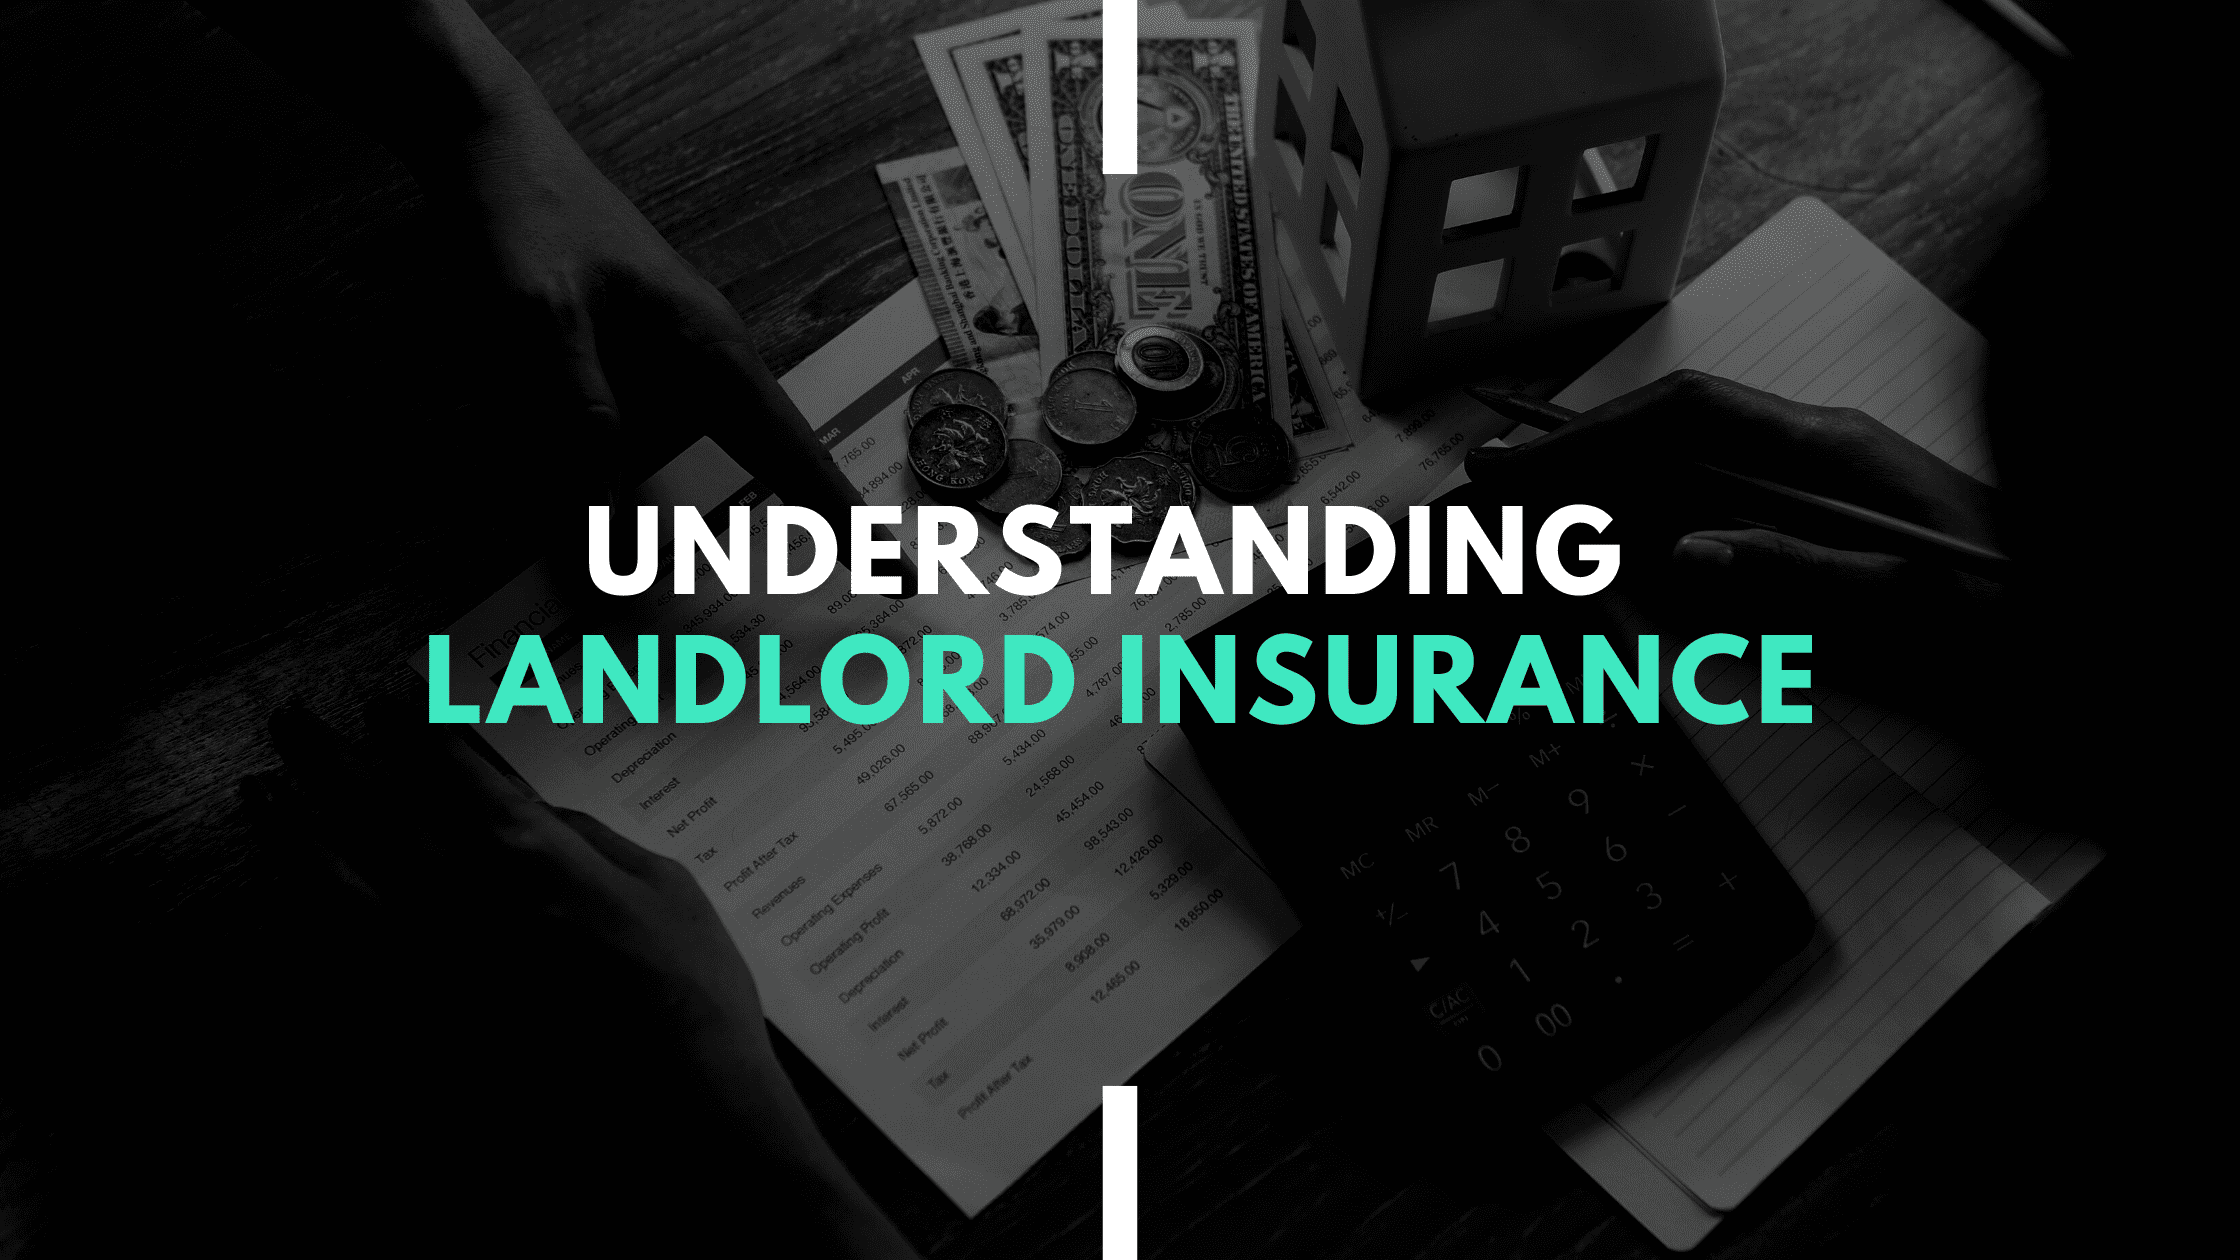 Lanldord Insurance